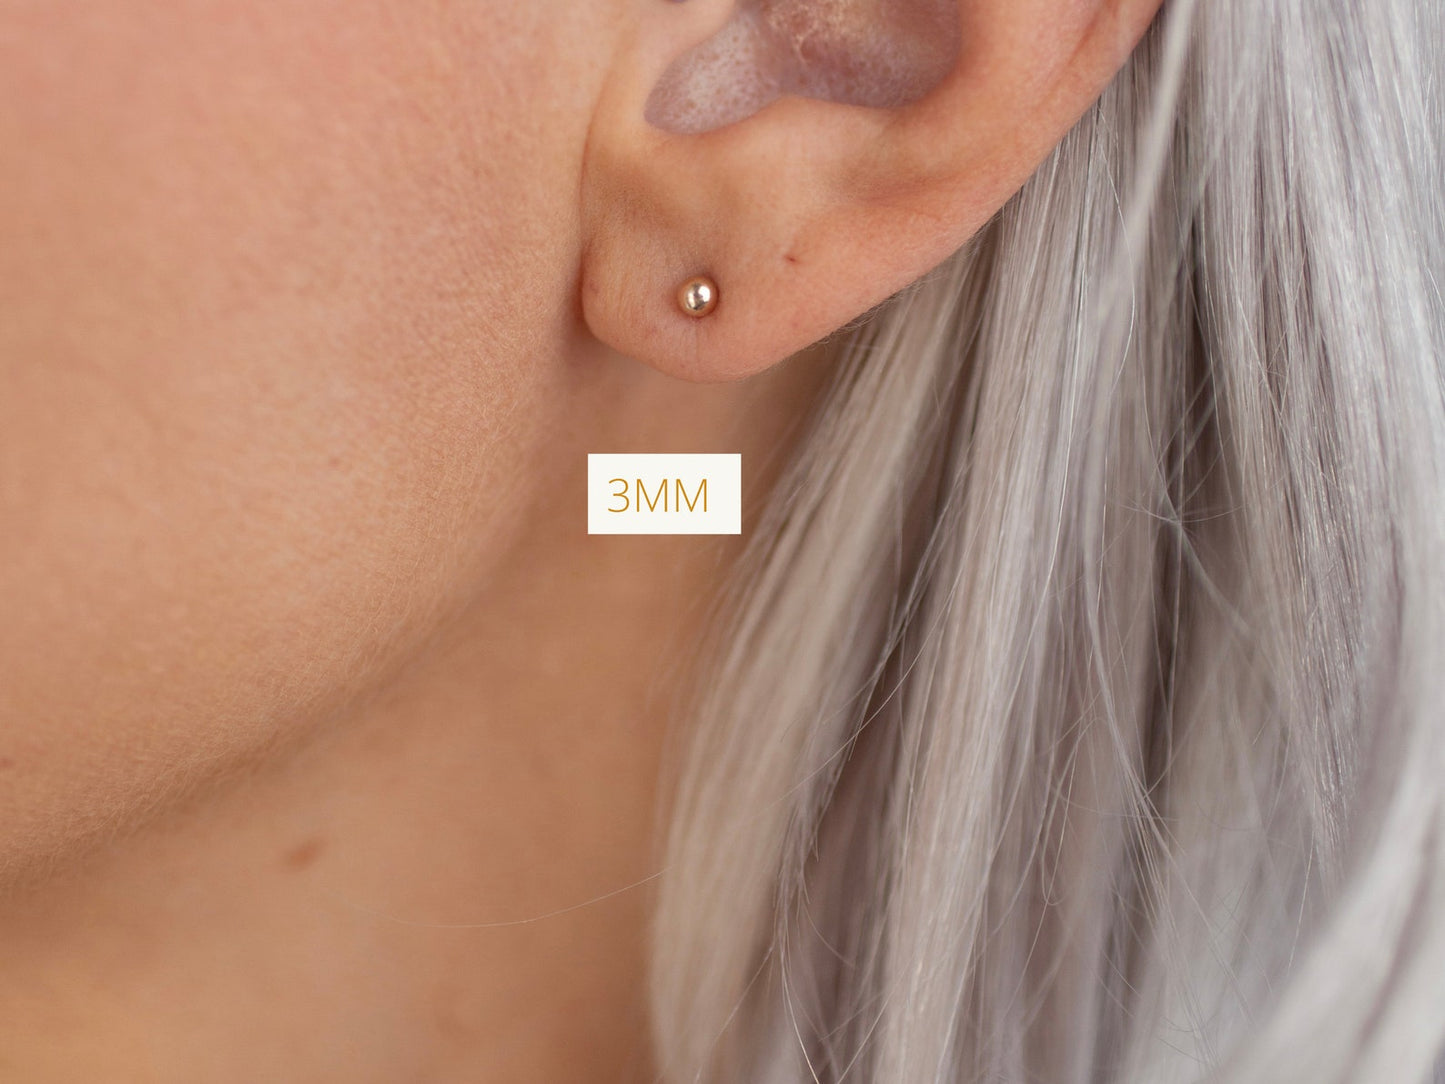 Rose Gold Simple Stud Earrings